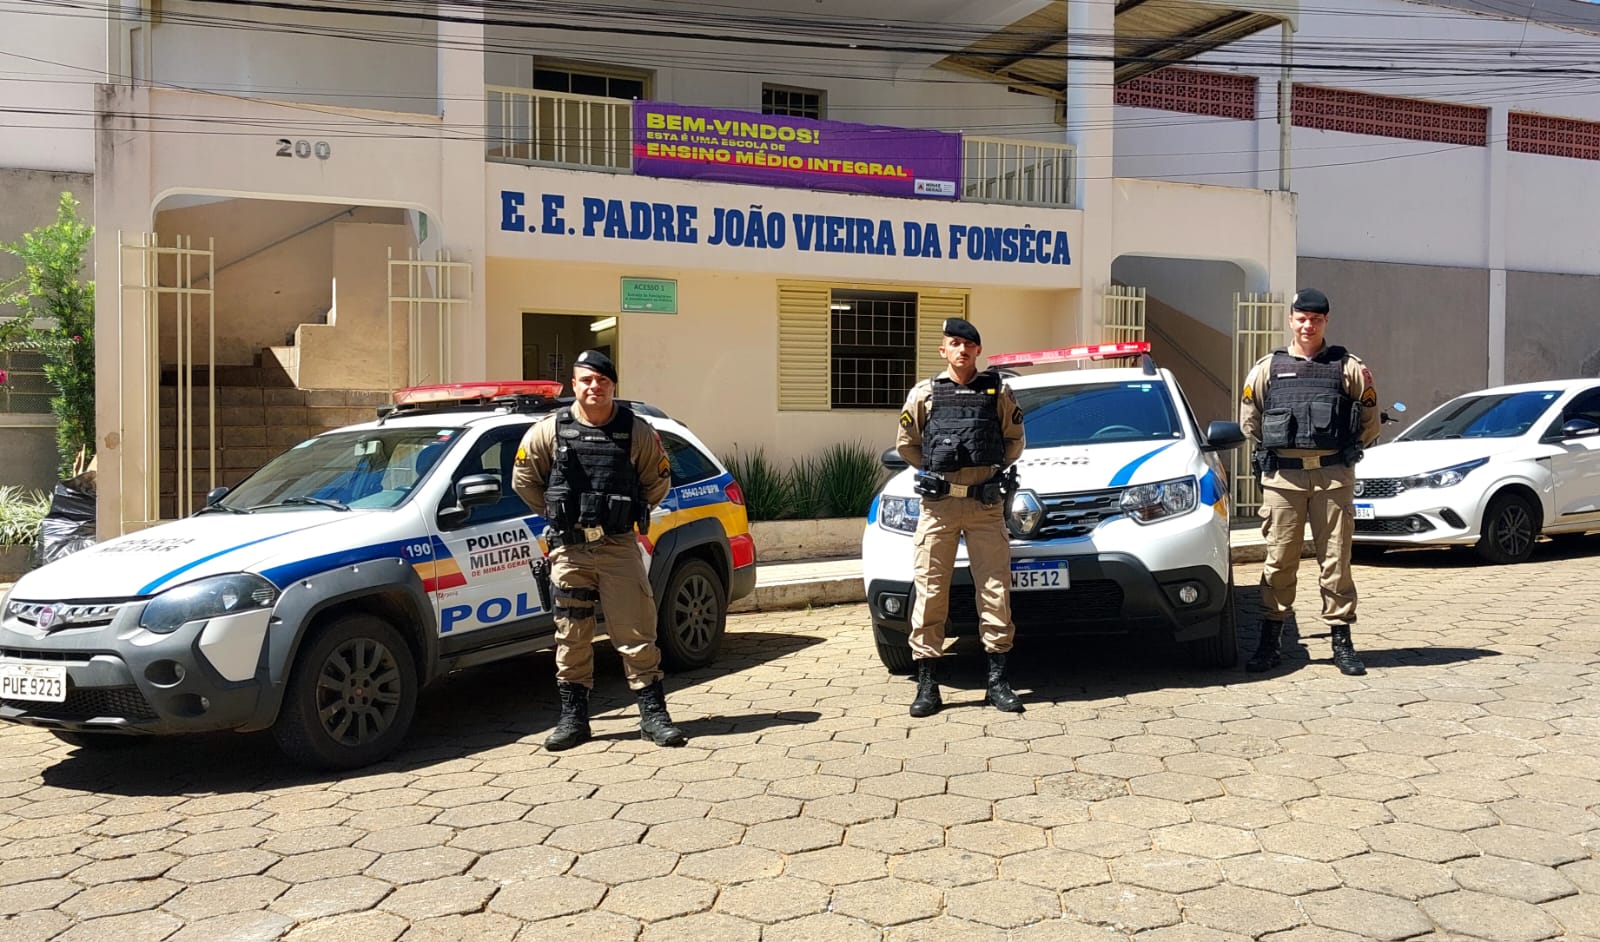 Nova operação da Polícia Militar vai fortalecer rede de proteção nas escolas mineiras